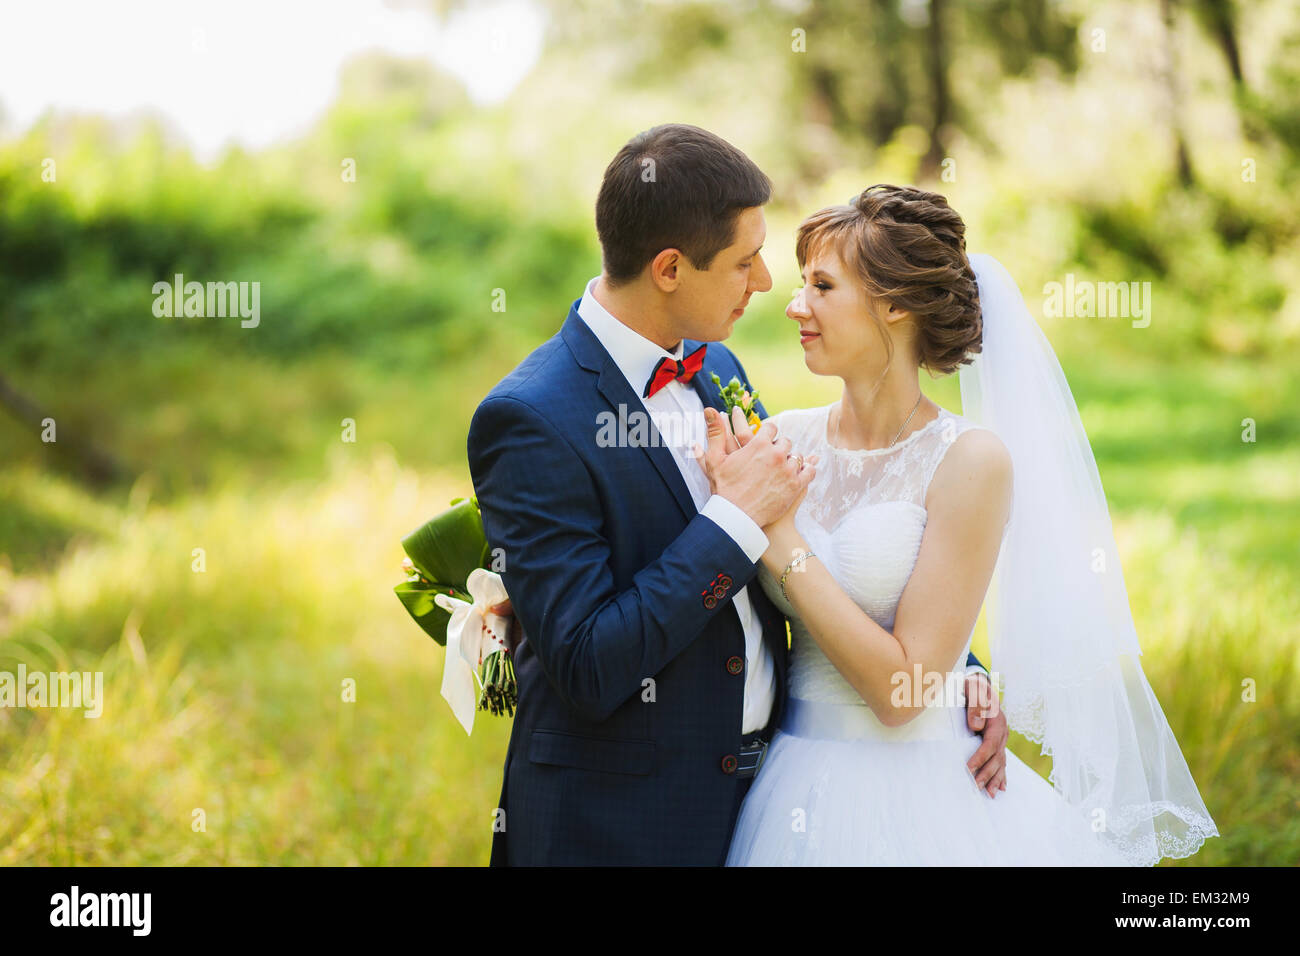 glückliche Braut, Bräutigam stehen im grünen Park, küssen, Lächeln, lachen, umarmen. Liebhaber in Hochzeitstag. Stockfoto